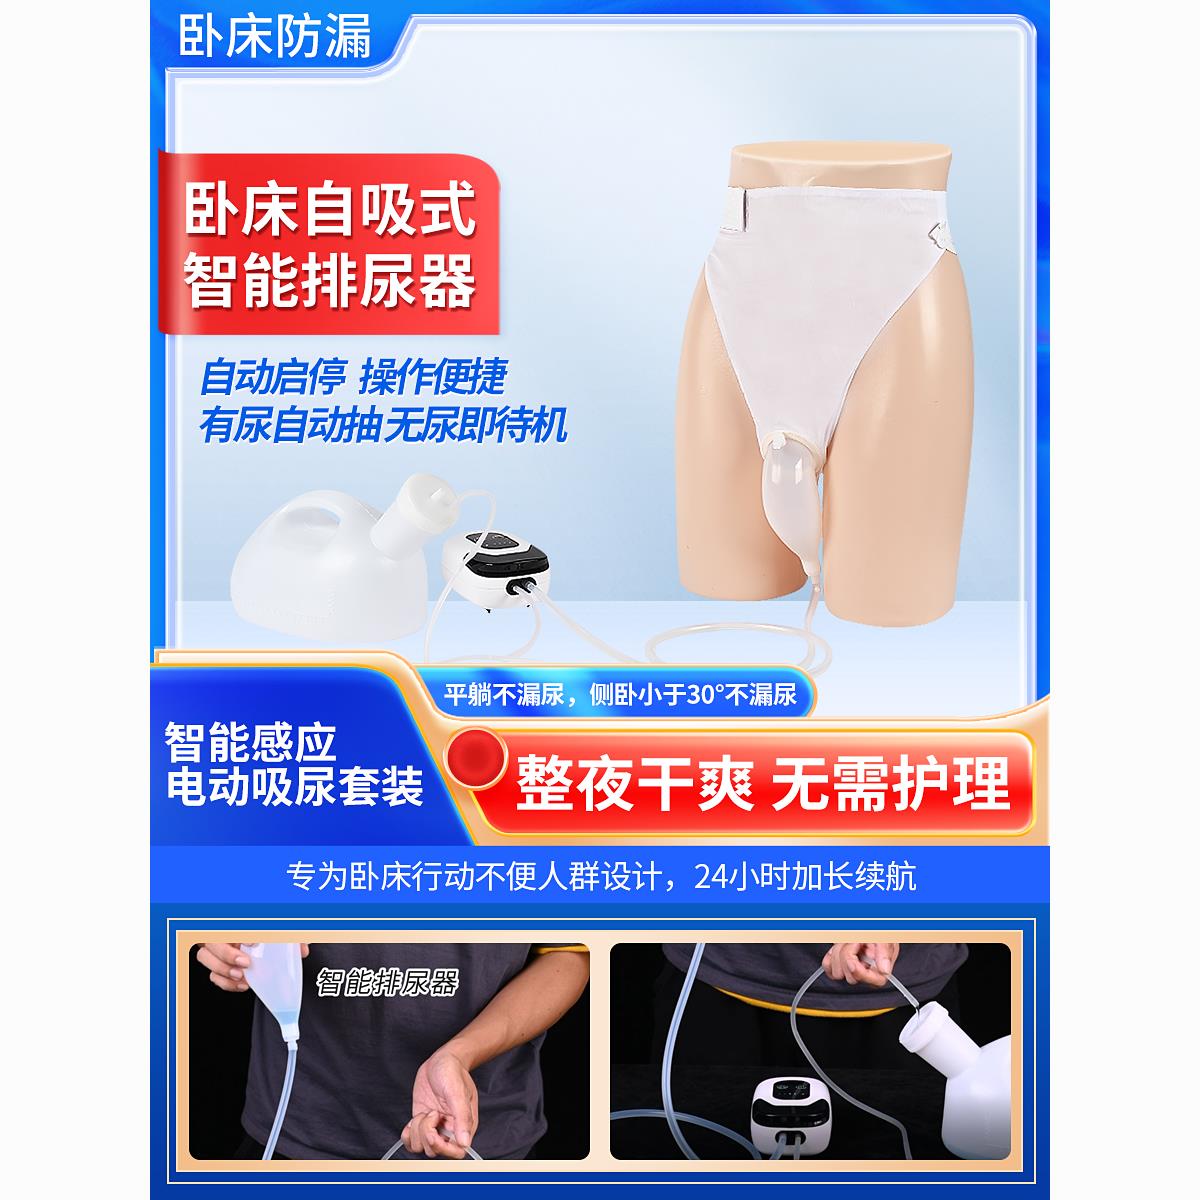 【台灣公司 超低價】自動智能集尿器電動吸尿器自吸式接尿器臥床老人成年人小便接尿器